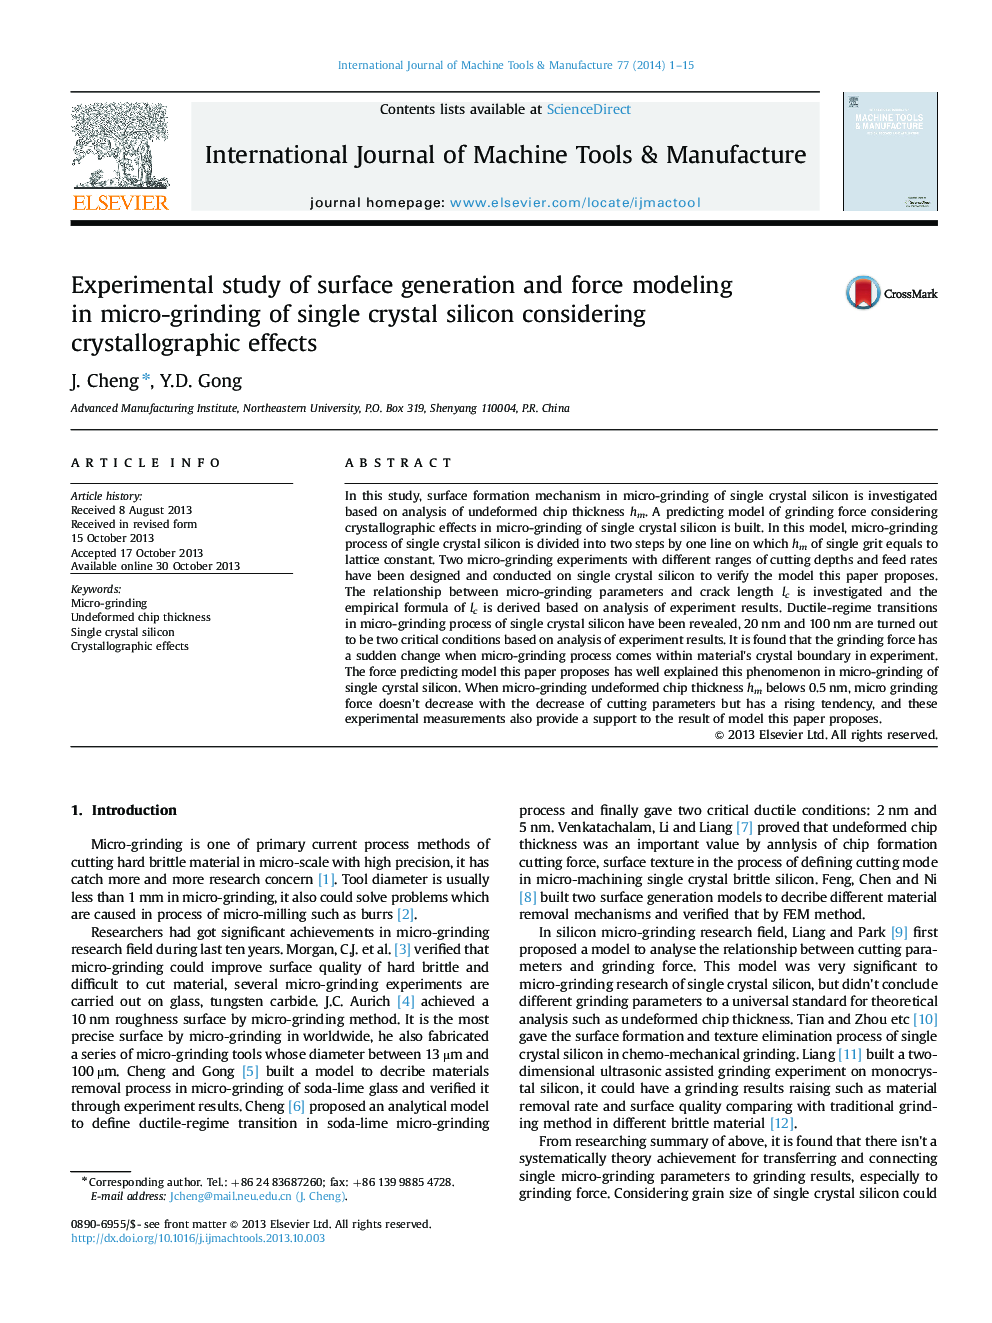 مطالعه تجربی از ساخت و ساز سطح و مدل سازی نیرو در میکرو سنگزنی از سیلیکون تک بلوری با توجه به اثرات کریستالوگرافی 